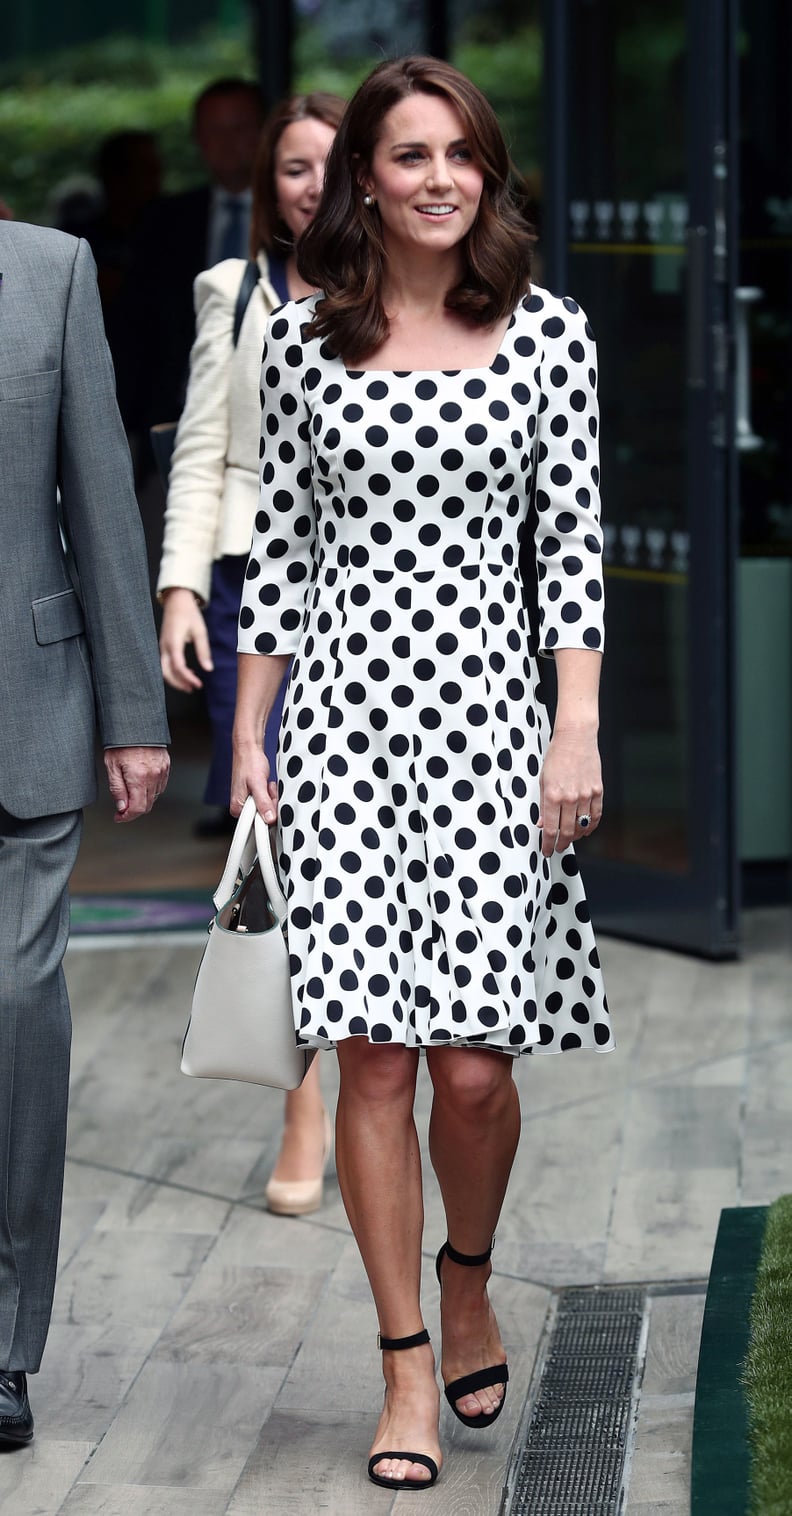 Kate Middleton Wore a Polka-Dot Print Dress by Dolce & Gabbana